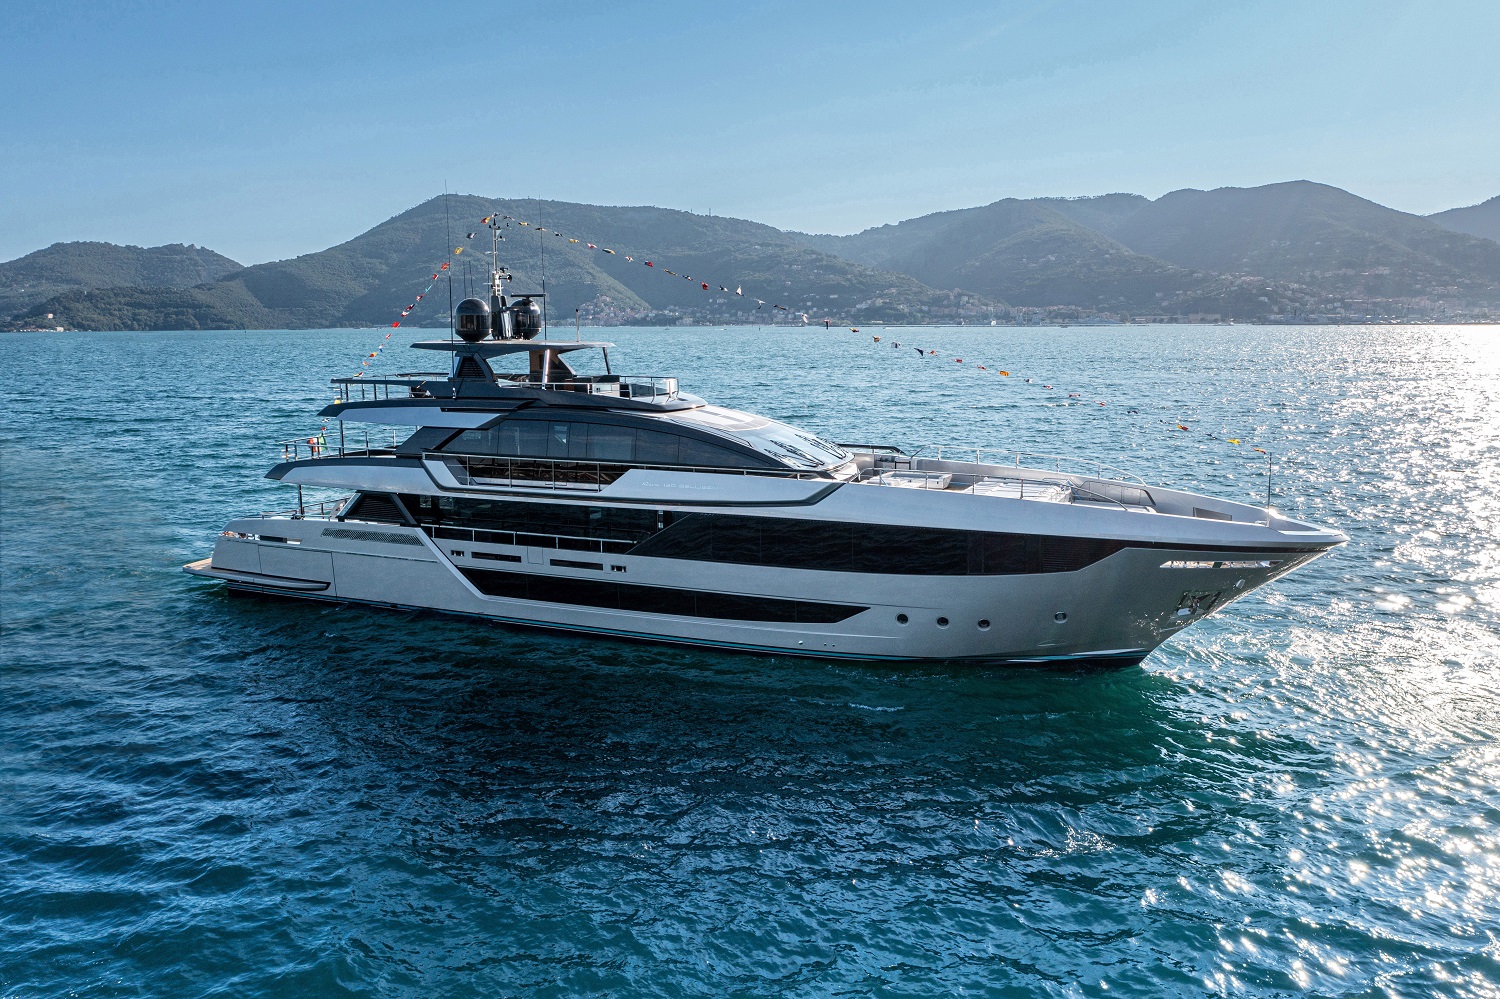 Grande successo per Ferretti Group  al Monaco Yacht Show con i super yacht in acciaio e due world première